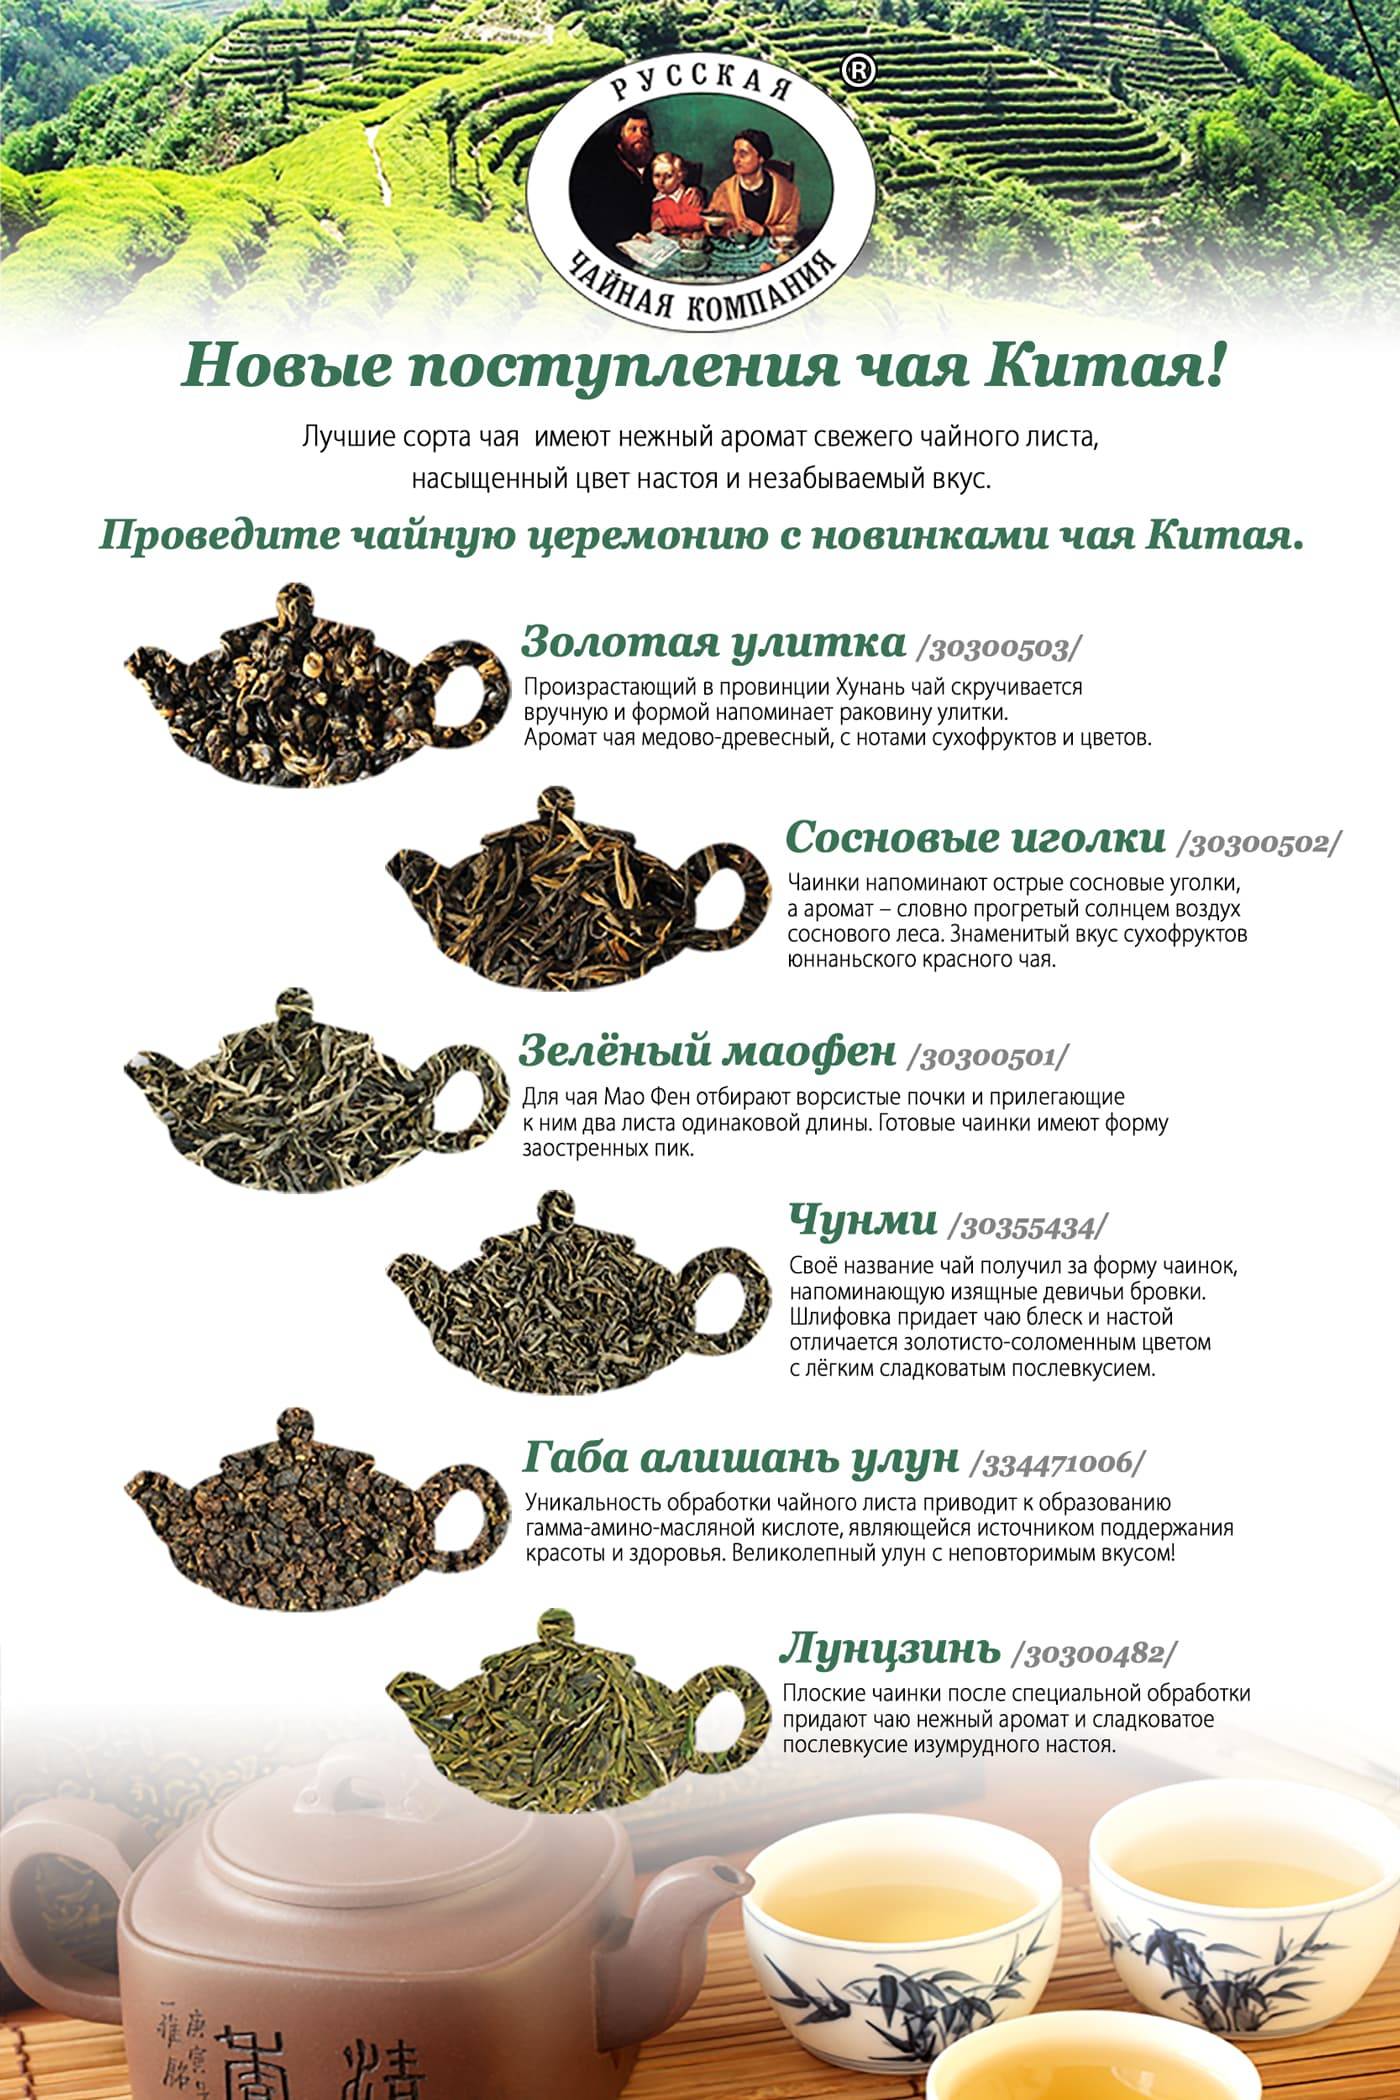 Чайный напиток: разнообразие чая, рецепты приготовления